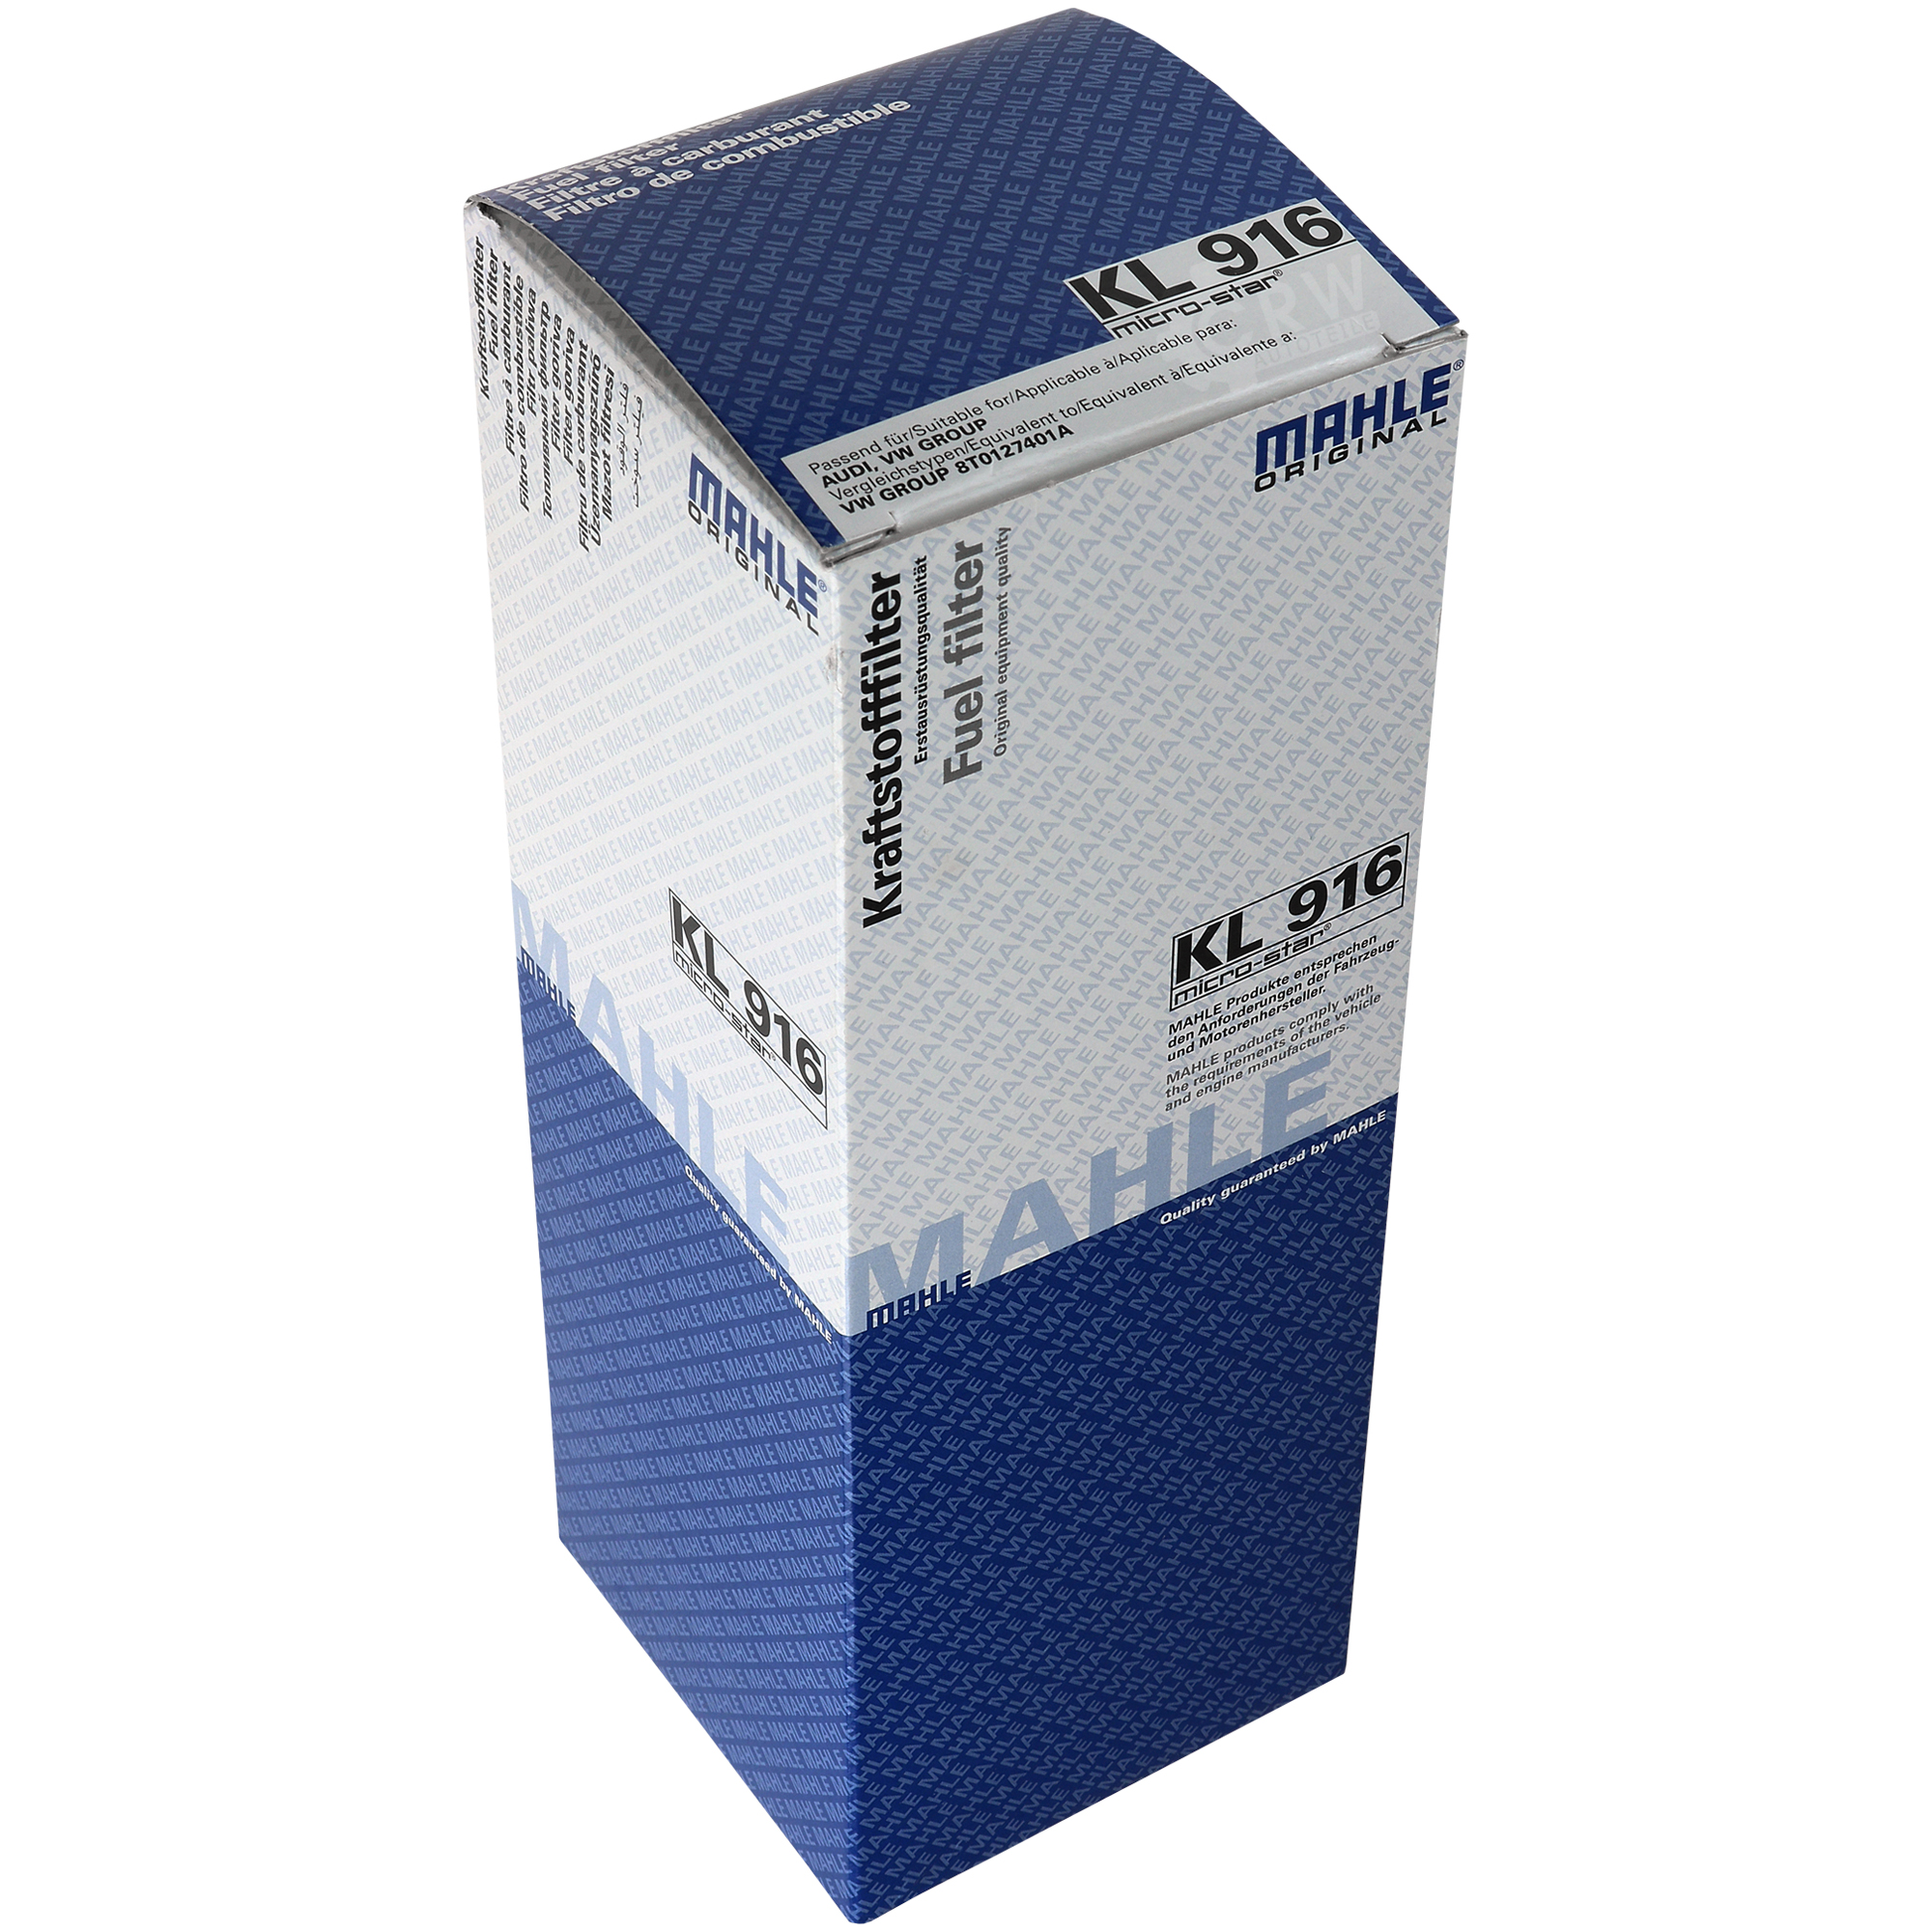 MAHLE / KNECHT Kraftstofffilter KL 916 Fuel Filter